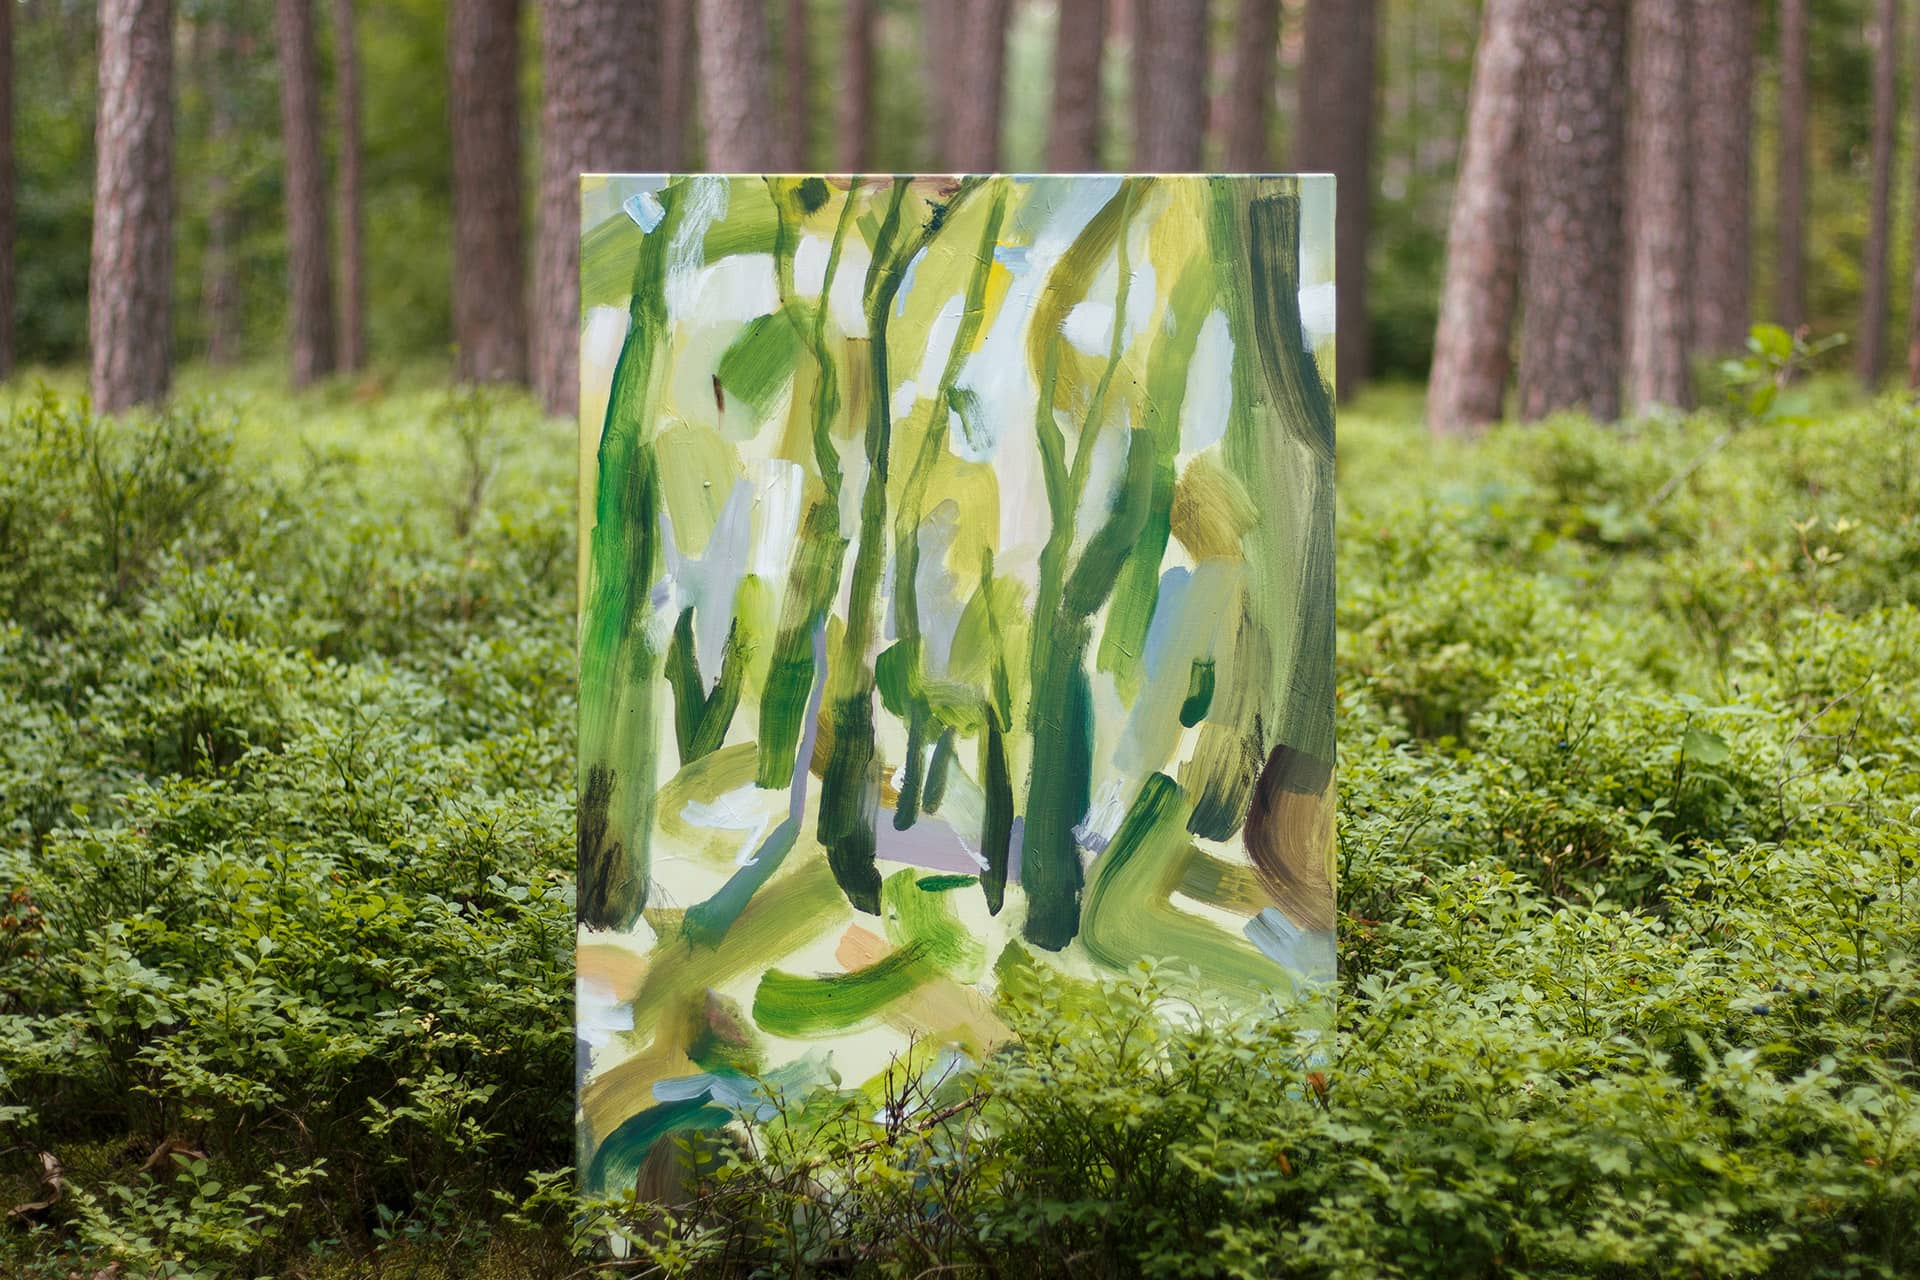 Grünes, abstraktes Kunstwerk, fotografiert in einem Waldstück bei Nürnberg zwischen Heidelbeersträuchern und Nadelbäumen